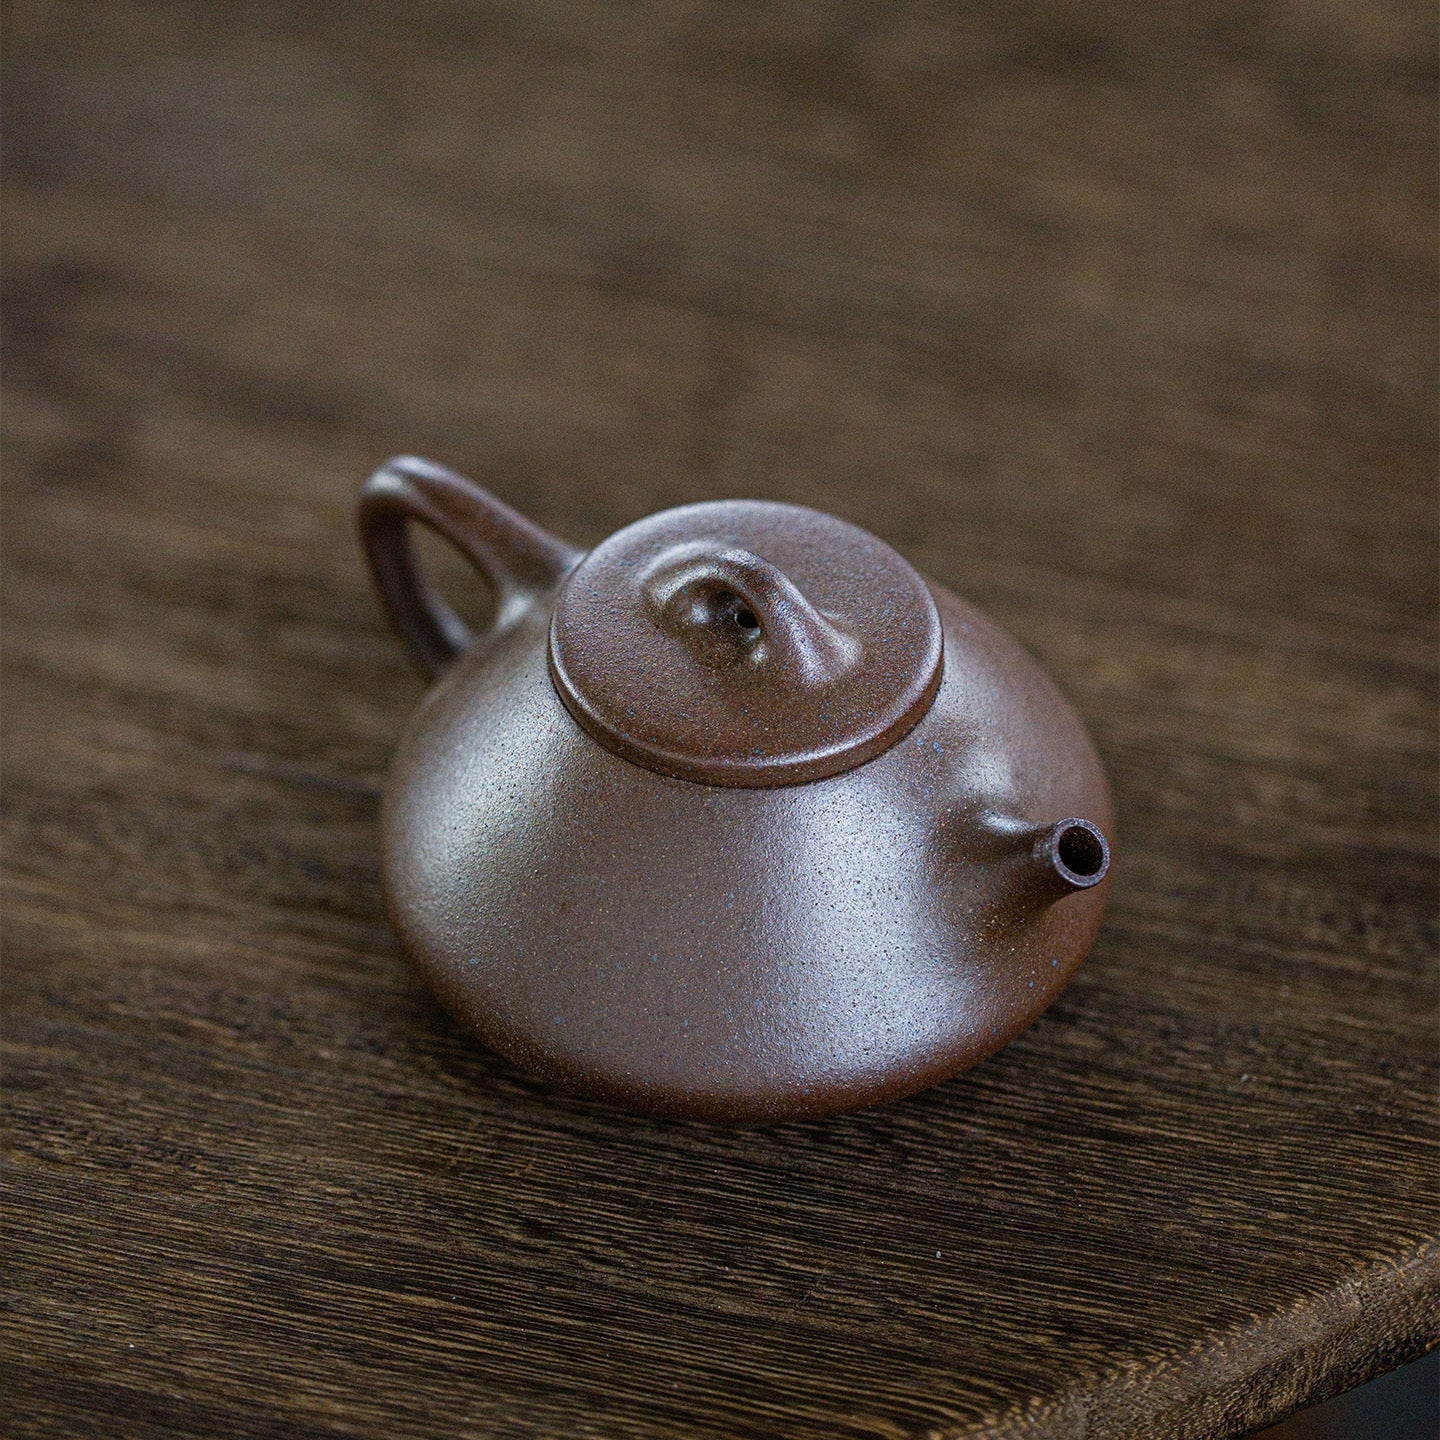 Shi Piao Yixing Teapot 110ml